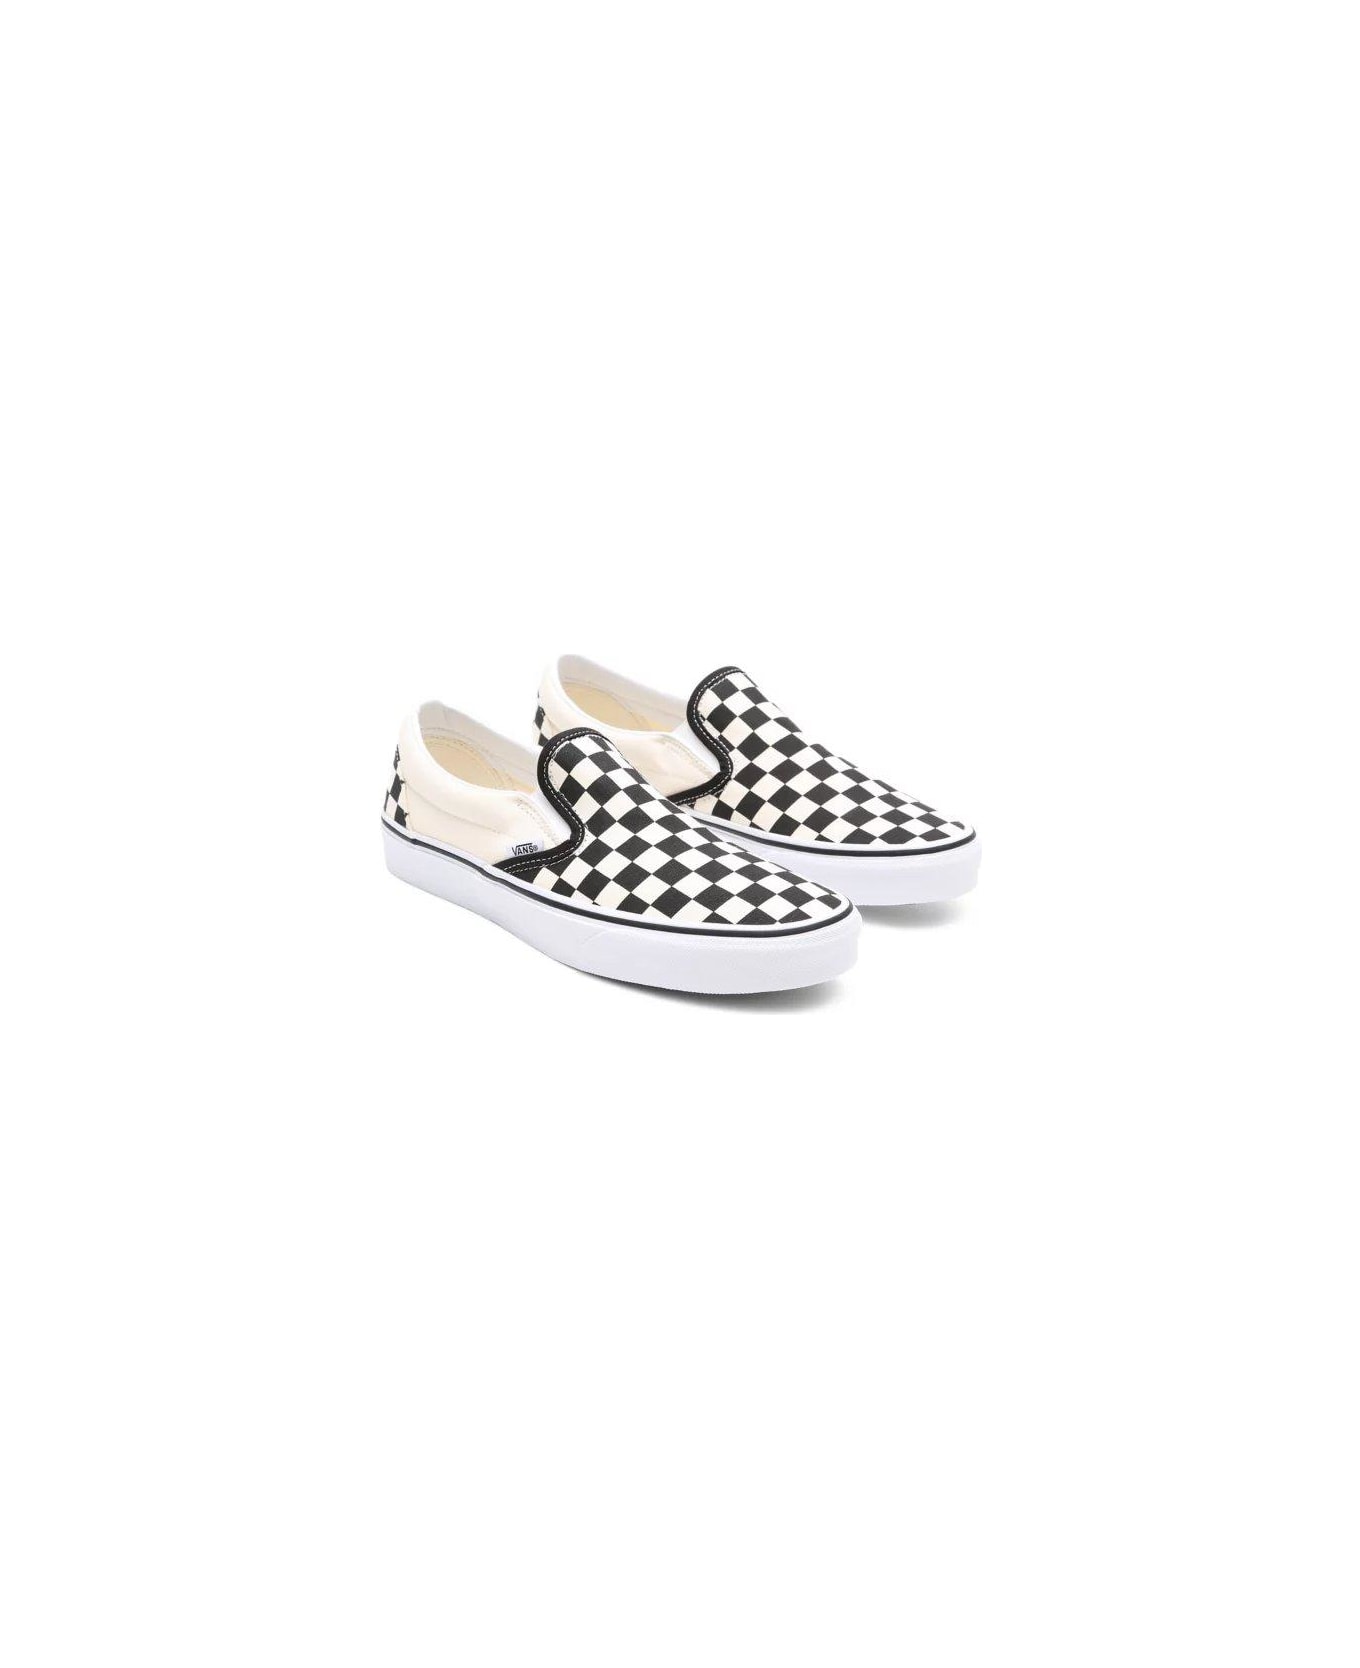 Vans Classic Checkerboard Slip-on Sneakers Vans - WHITE/BLACK